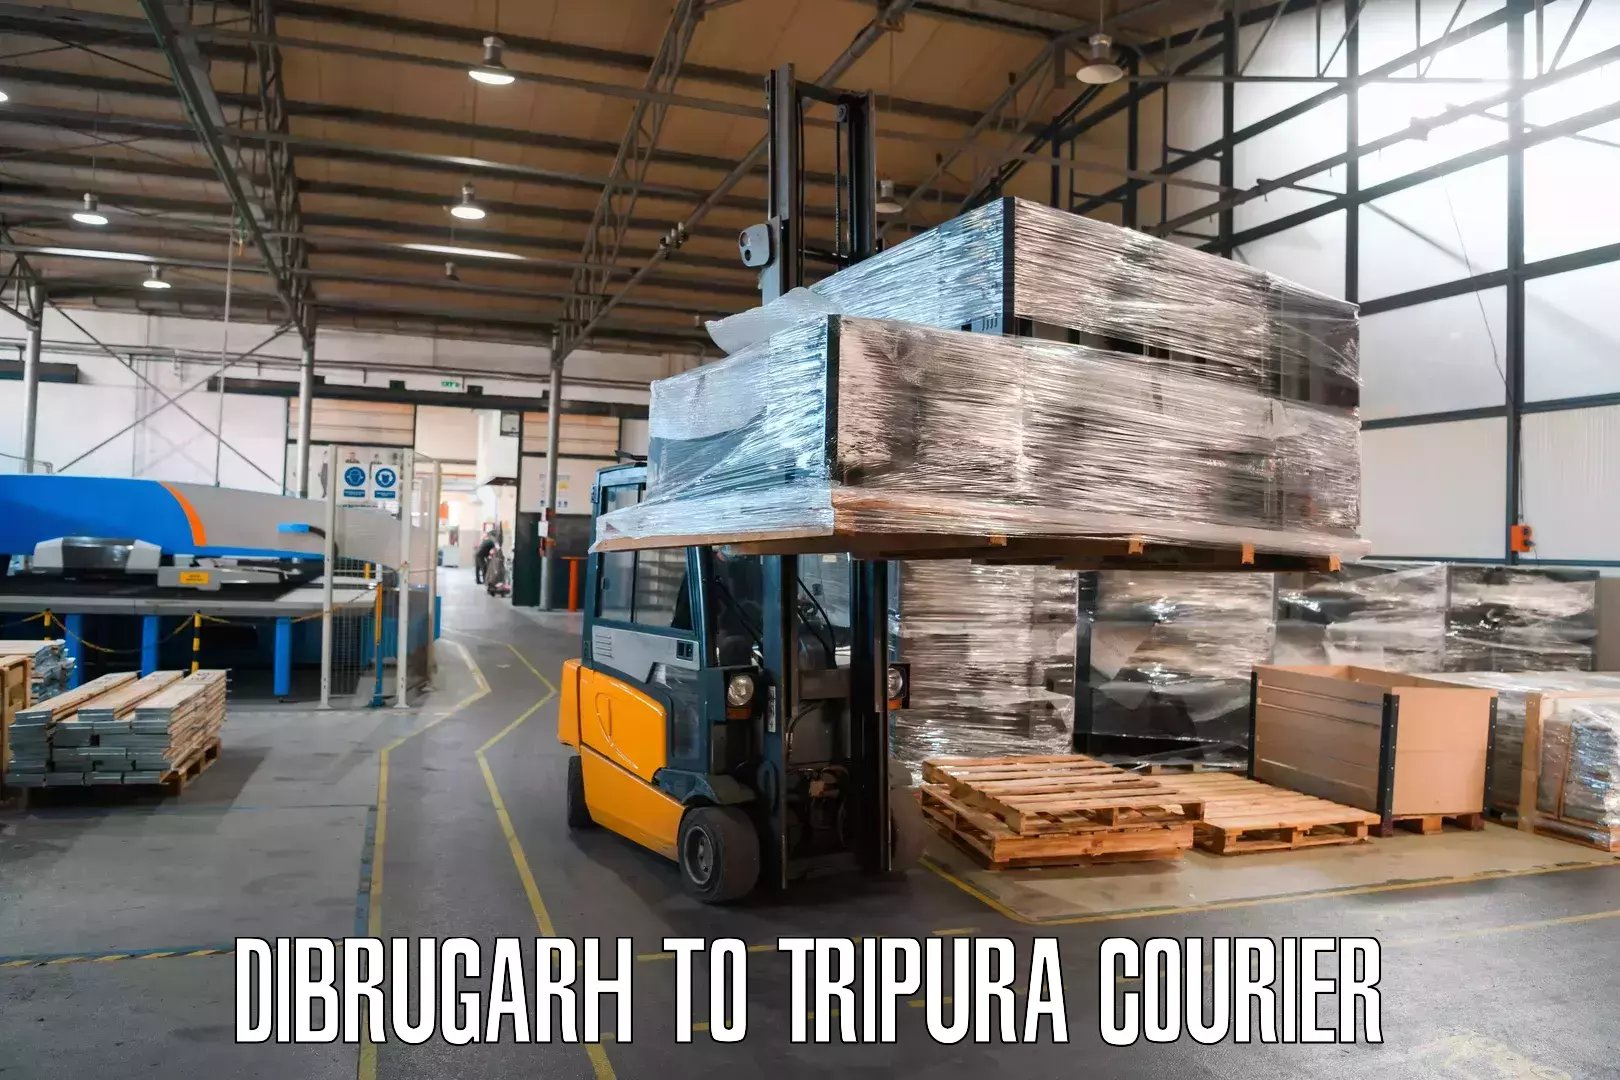 Reliable logistics providers Dibrugarh to Agartala